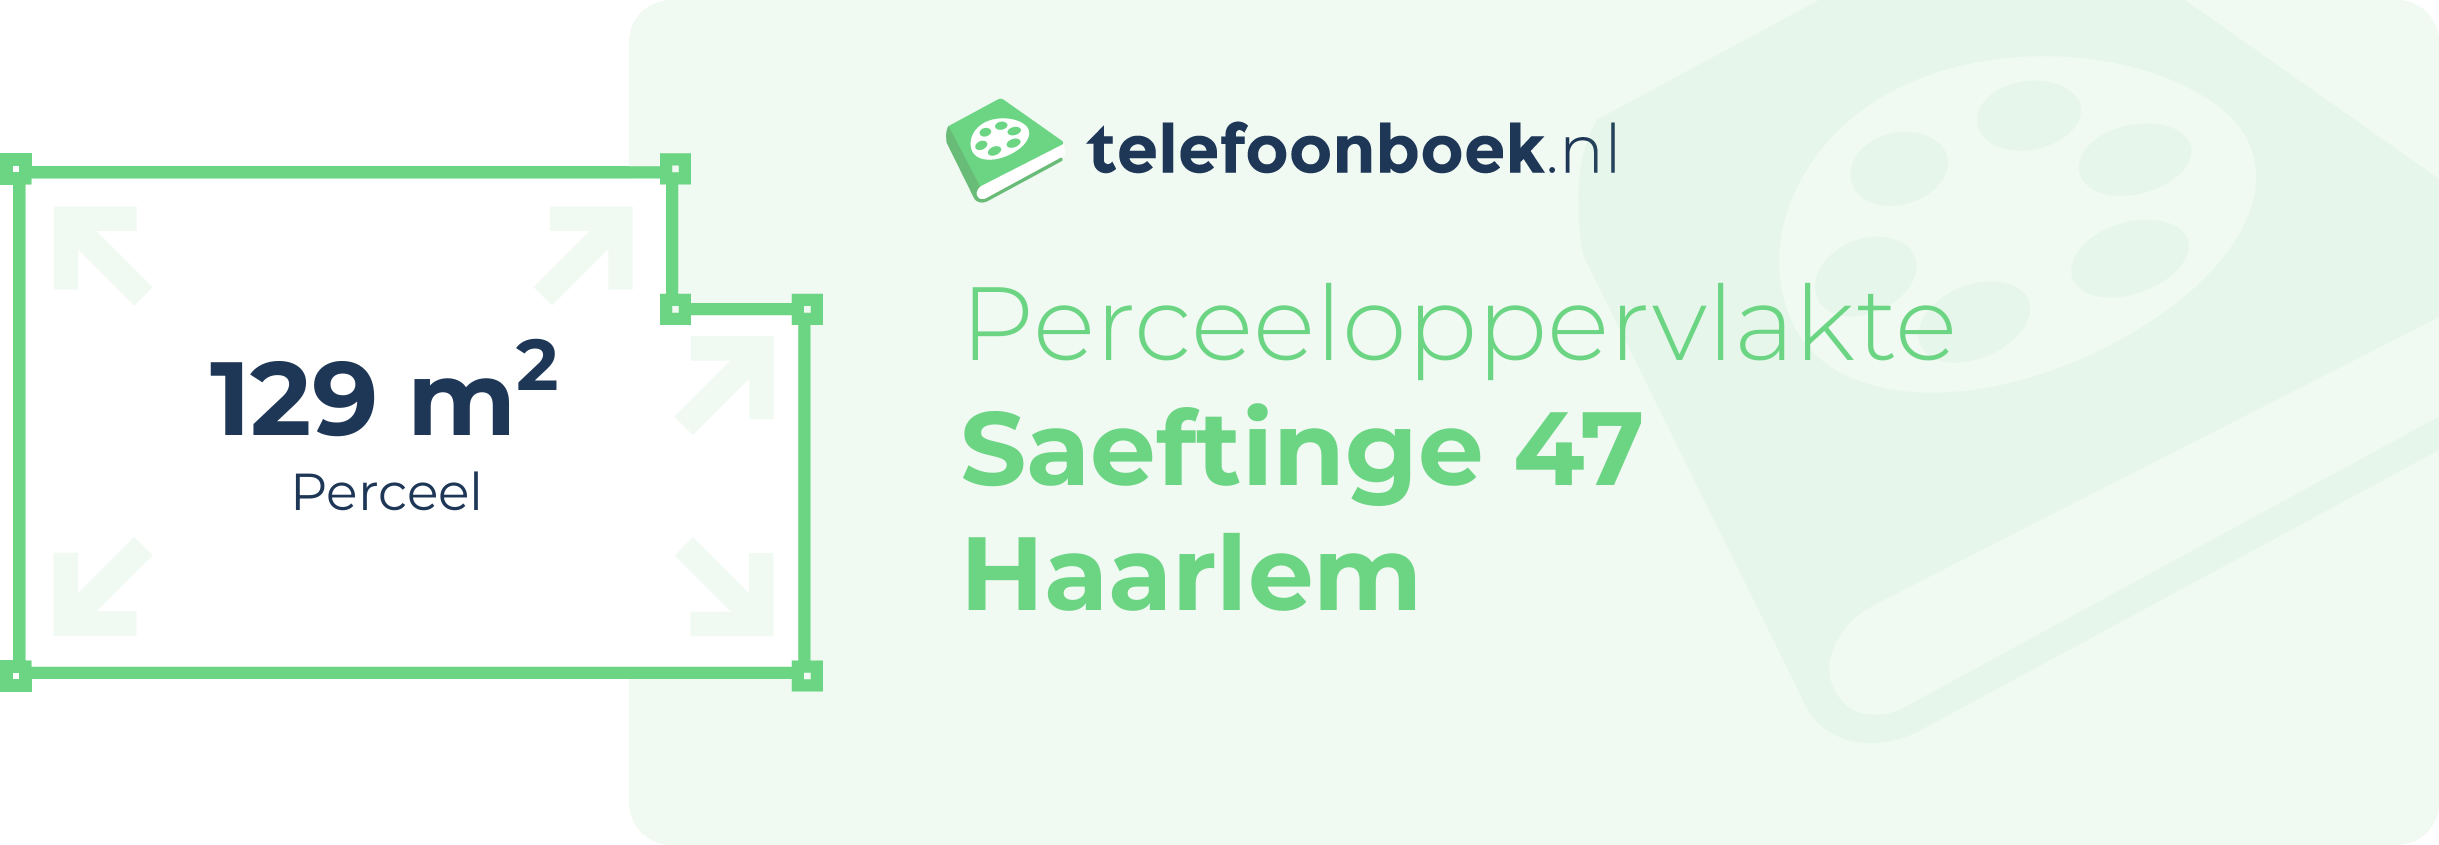 Perceeloppervlakte Saeftinge 47 Haarlem